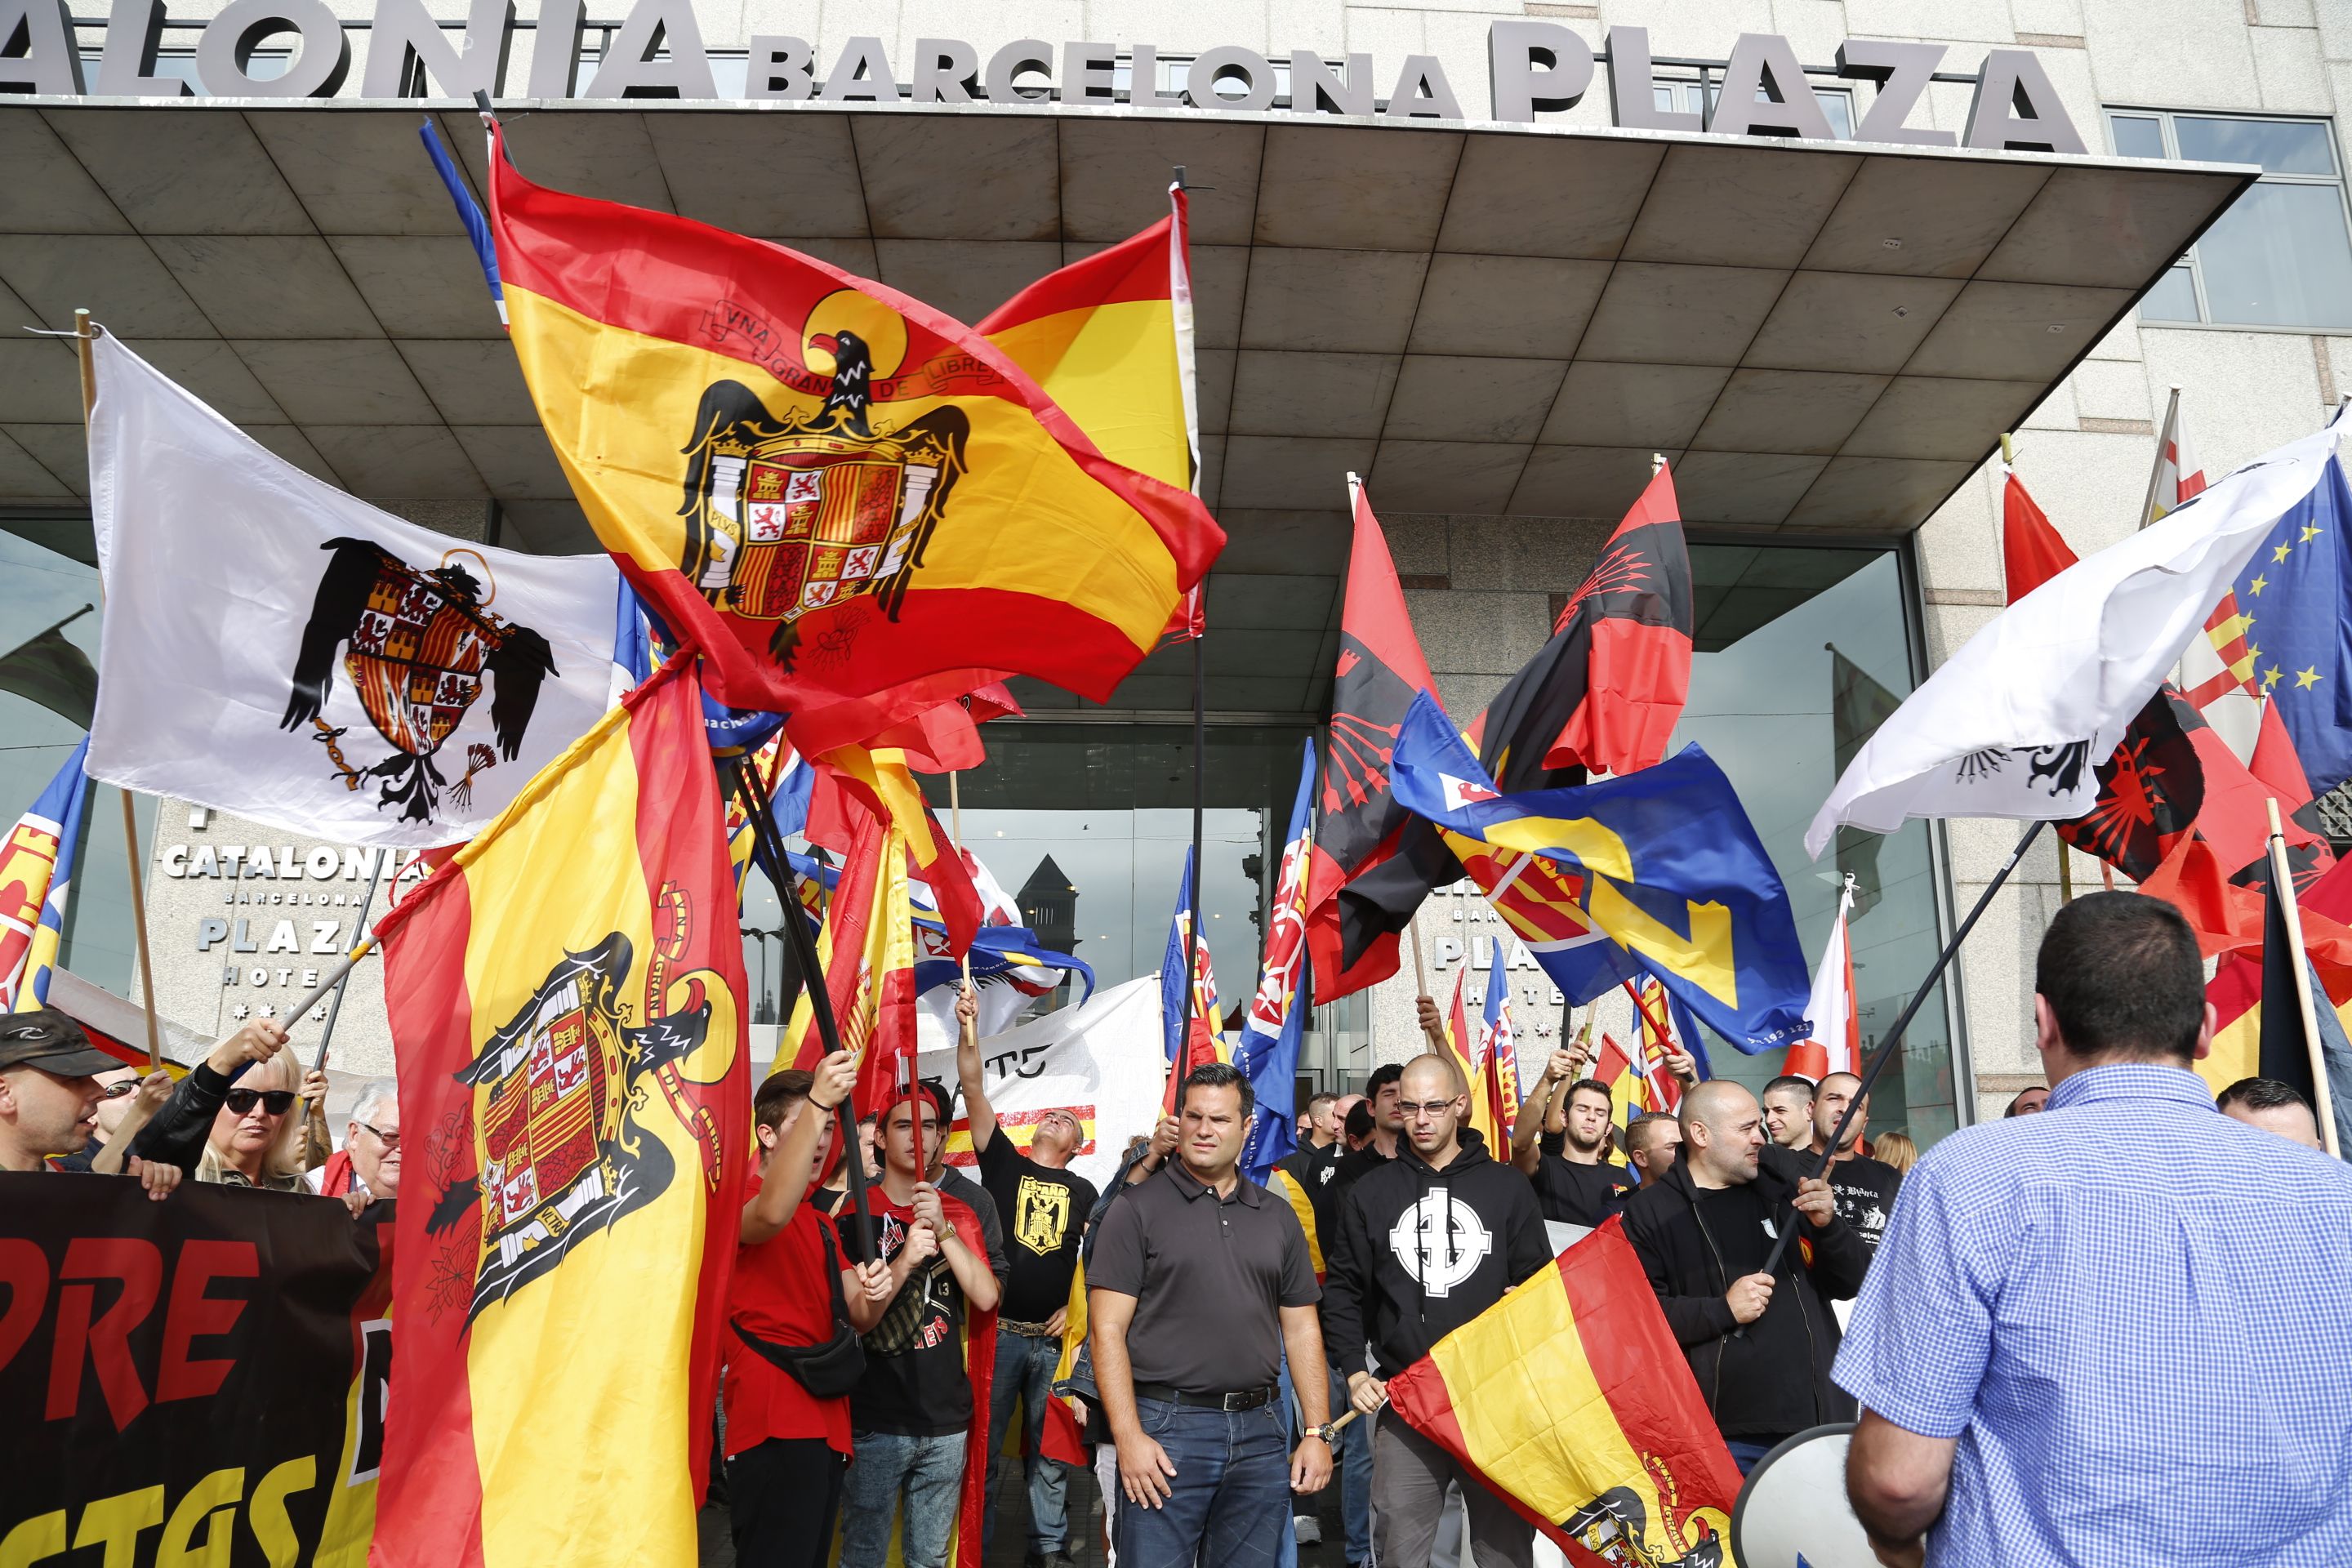 El proceso cohesiona y visibiliza la extrema derecha españolista